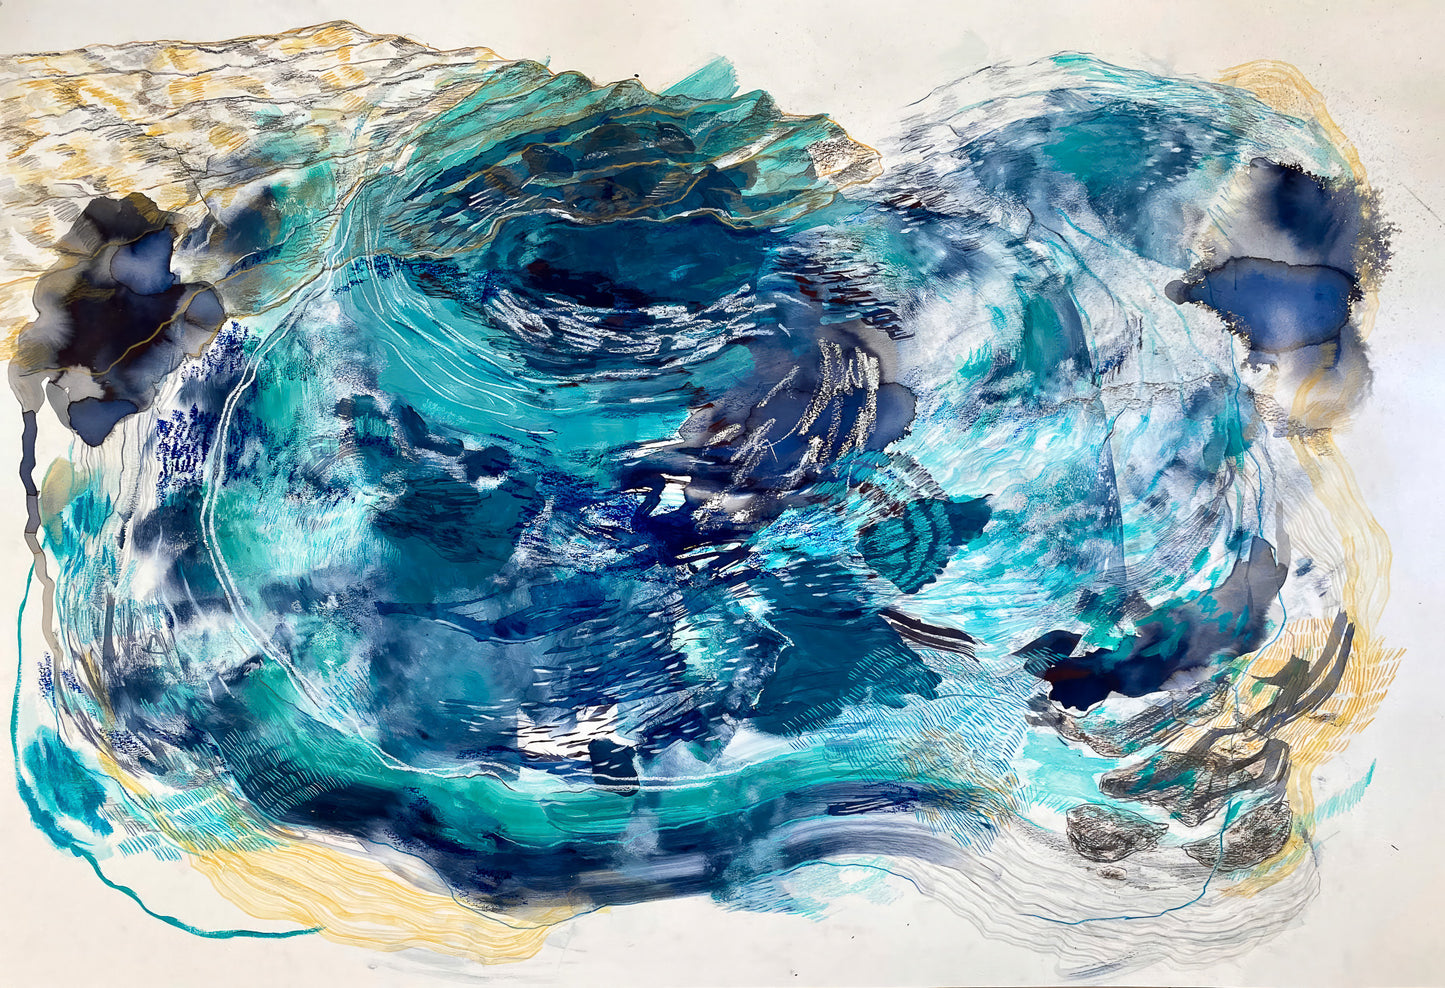 Abstract wild waves ocean abstract masirah island oman